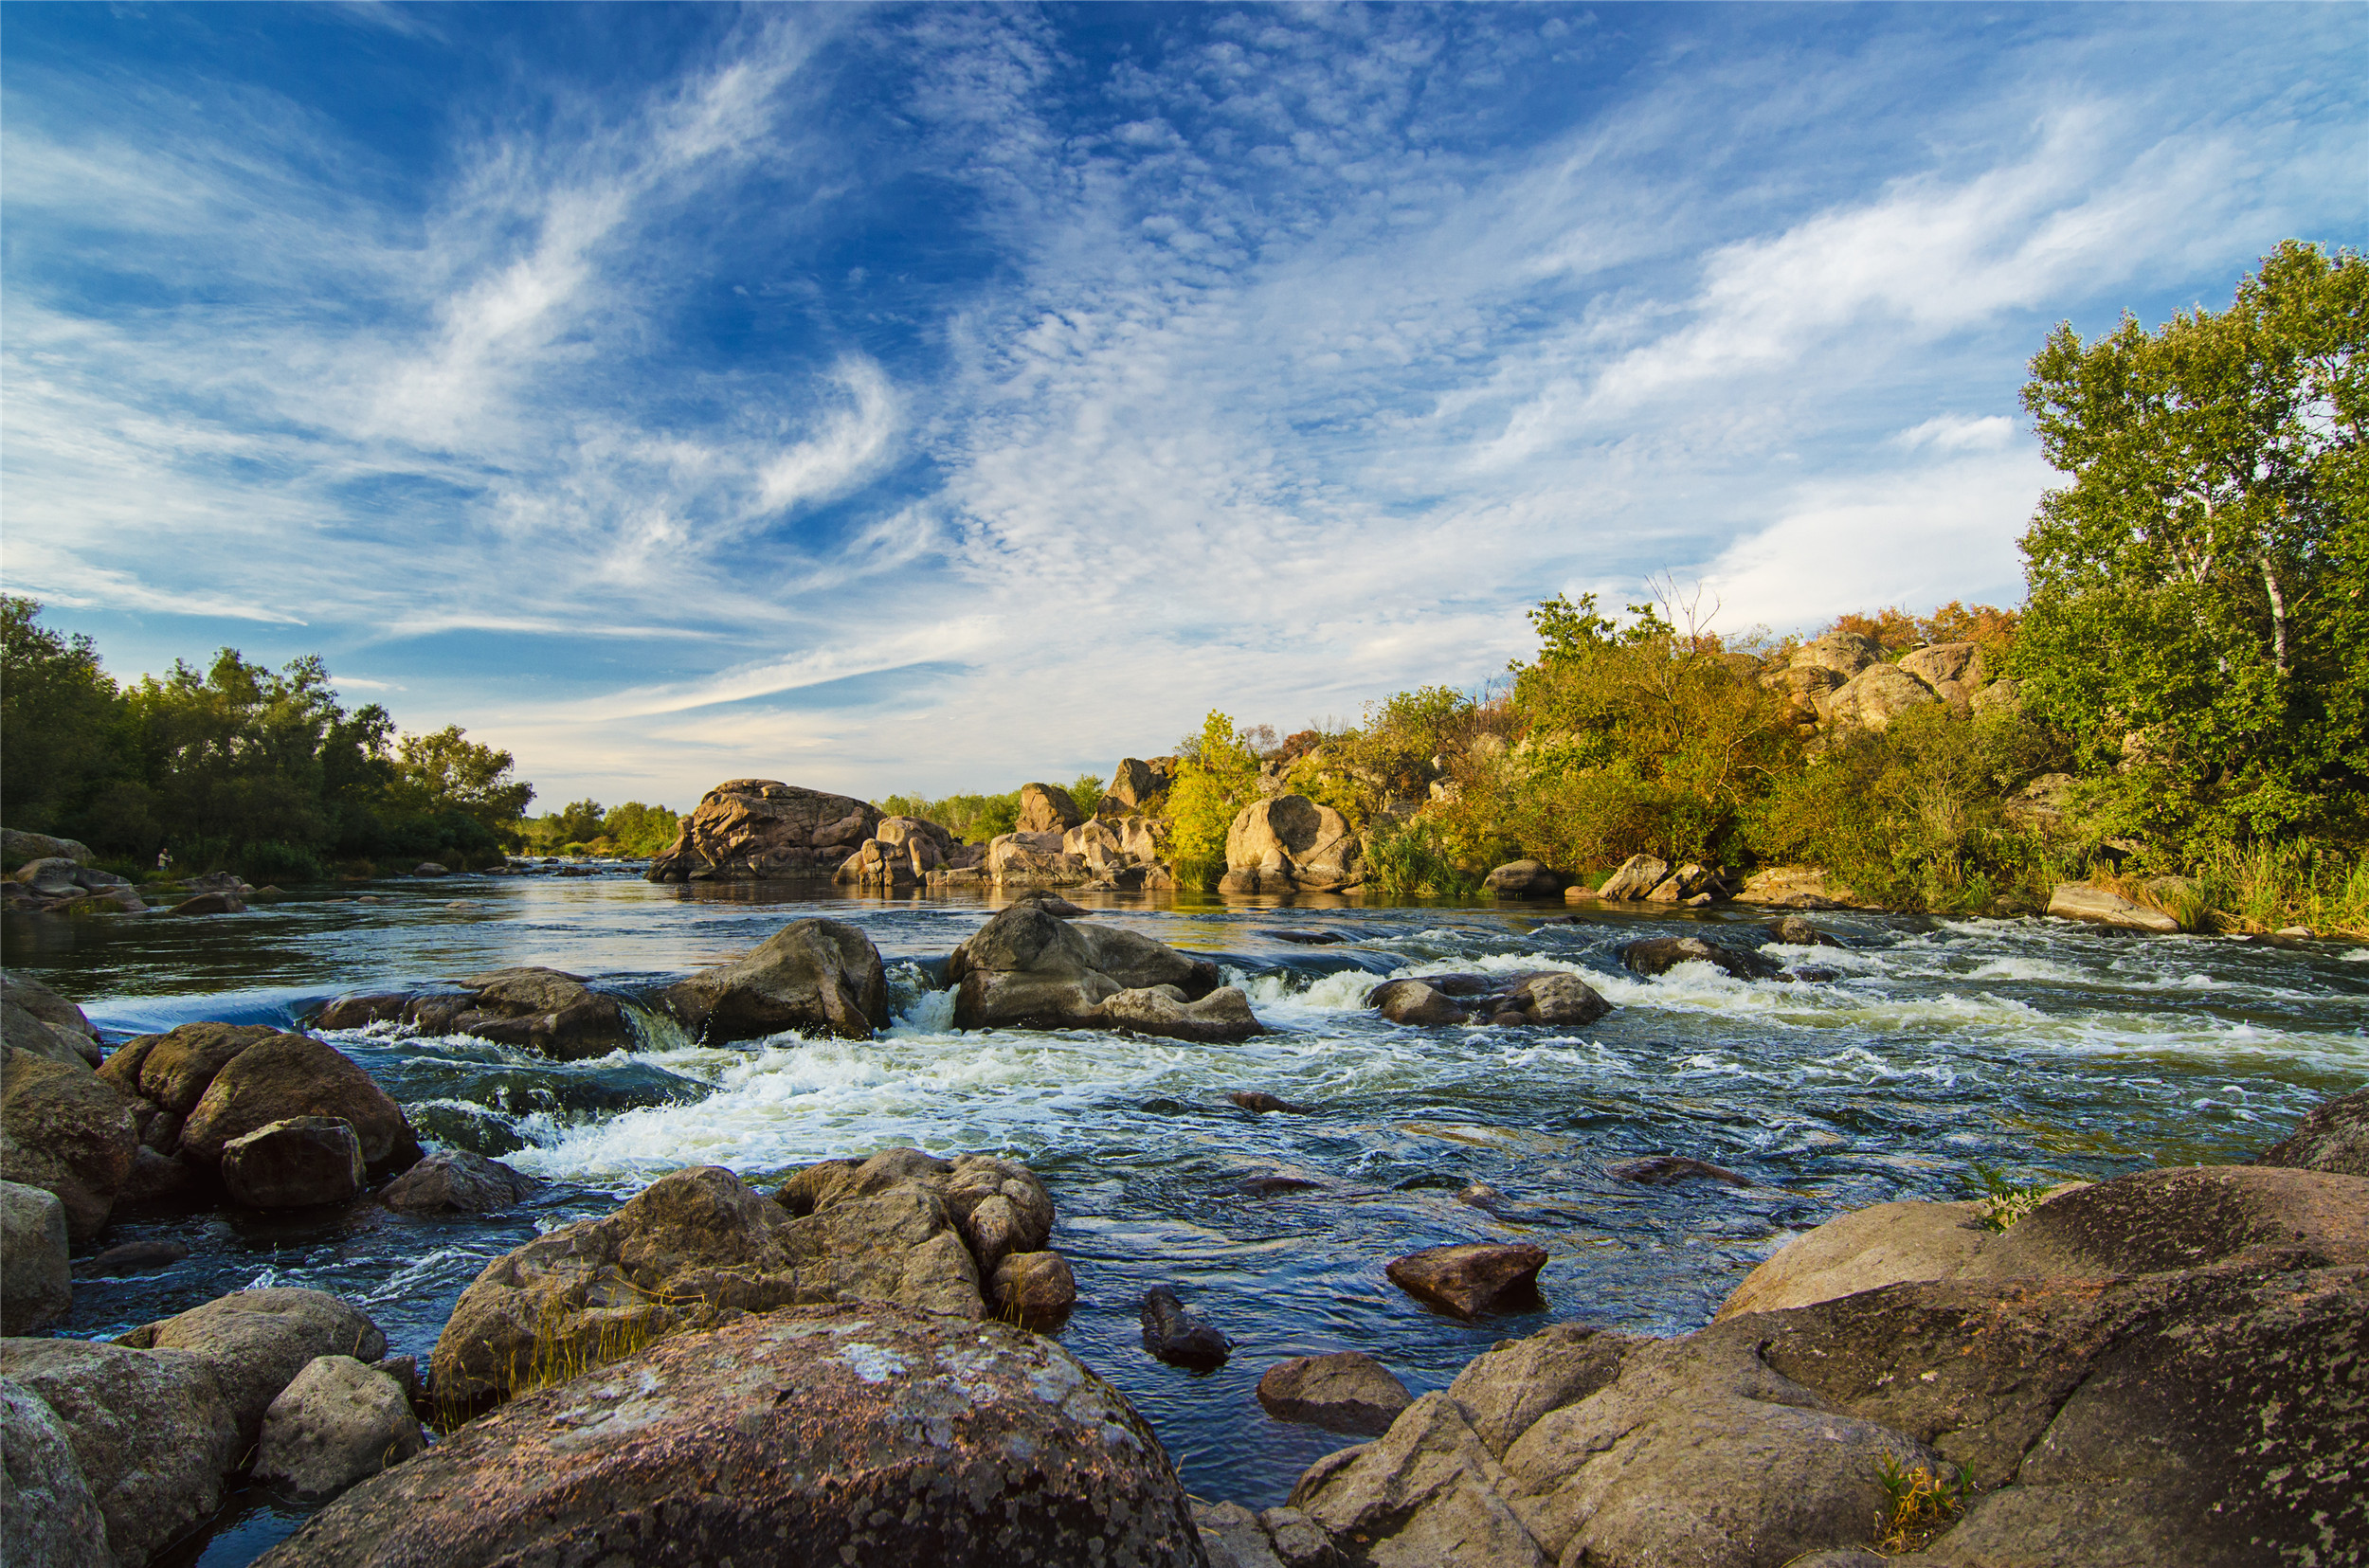 今日带你们欣赏六张风景图:领略山川独特魅力,令人惊艳